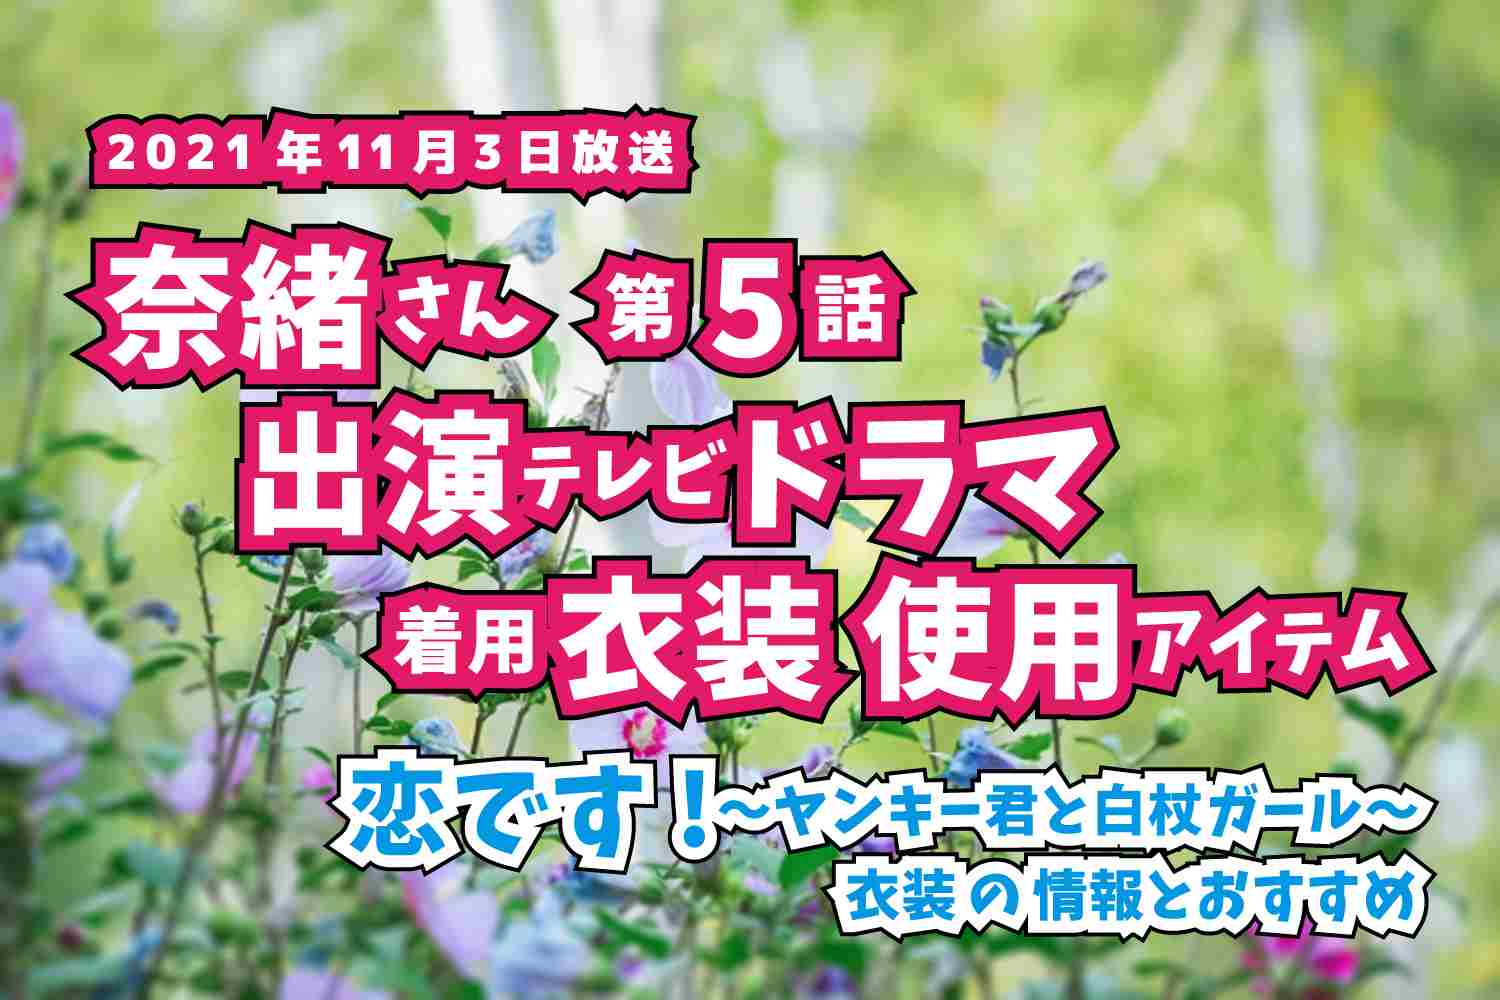 恋です!〜ヤンキー君と白杖ガール〜　奈緒さん　ドラマ　衣装　2021年11月3日放送